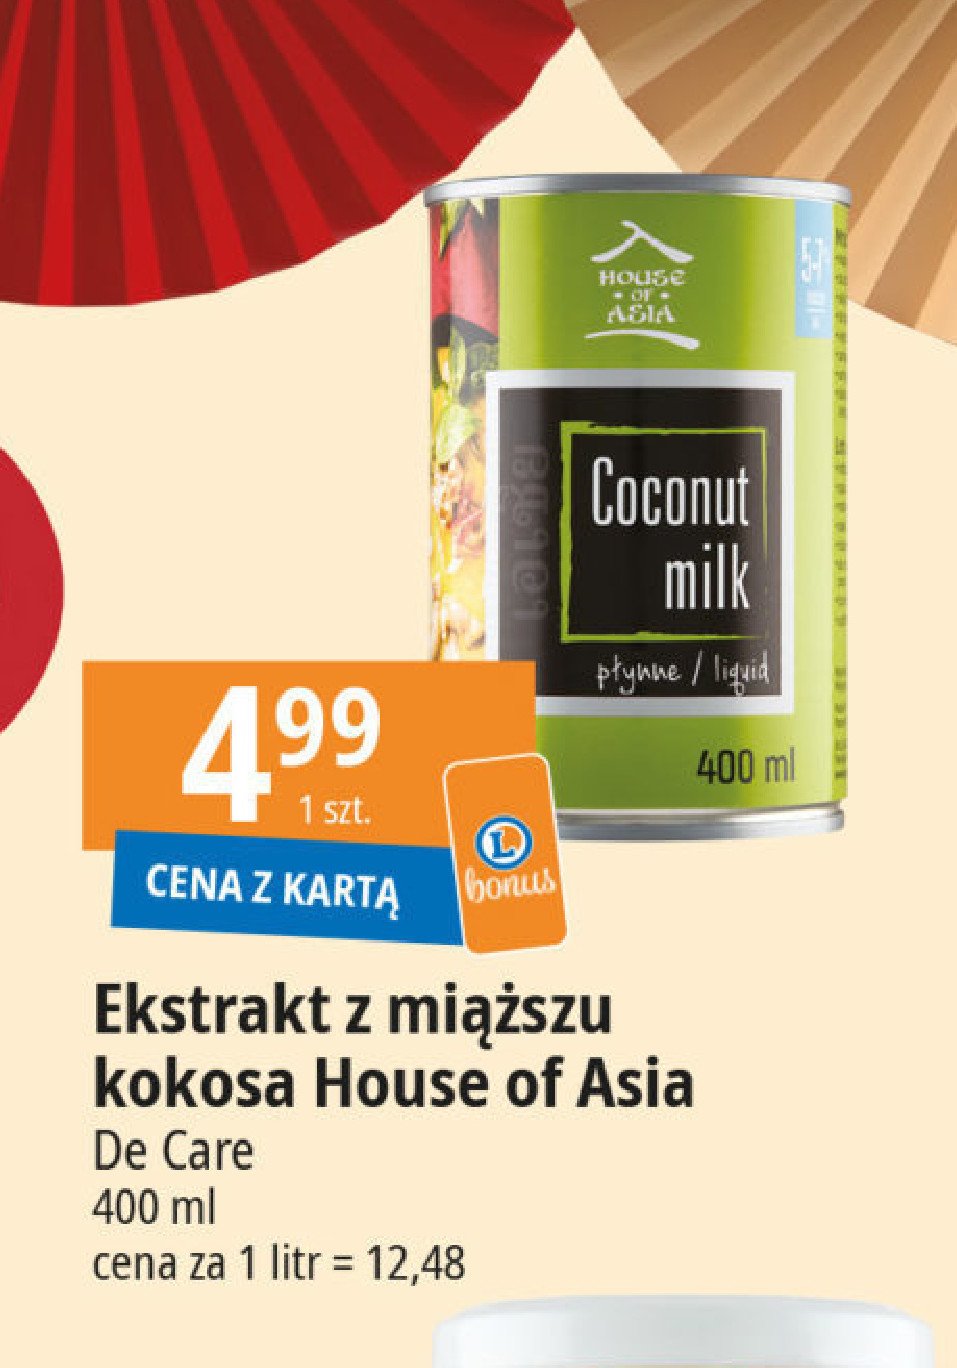 Mleczko kokosowe House of asia promocja